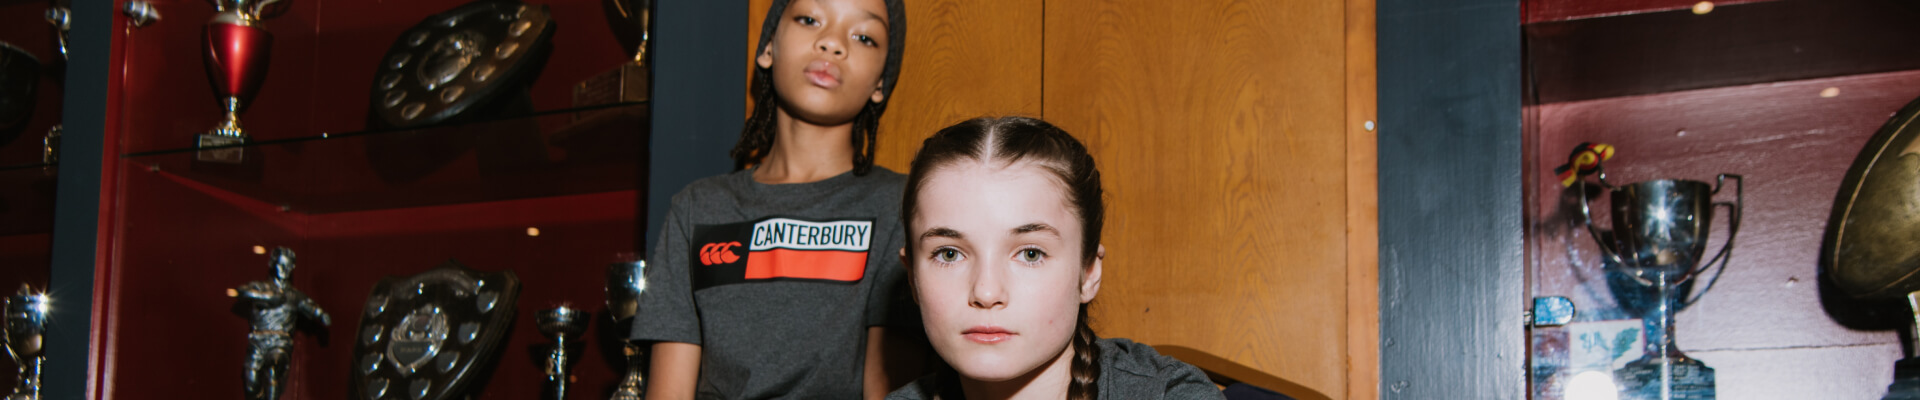 Kids wearing canterbury T shirts